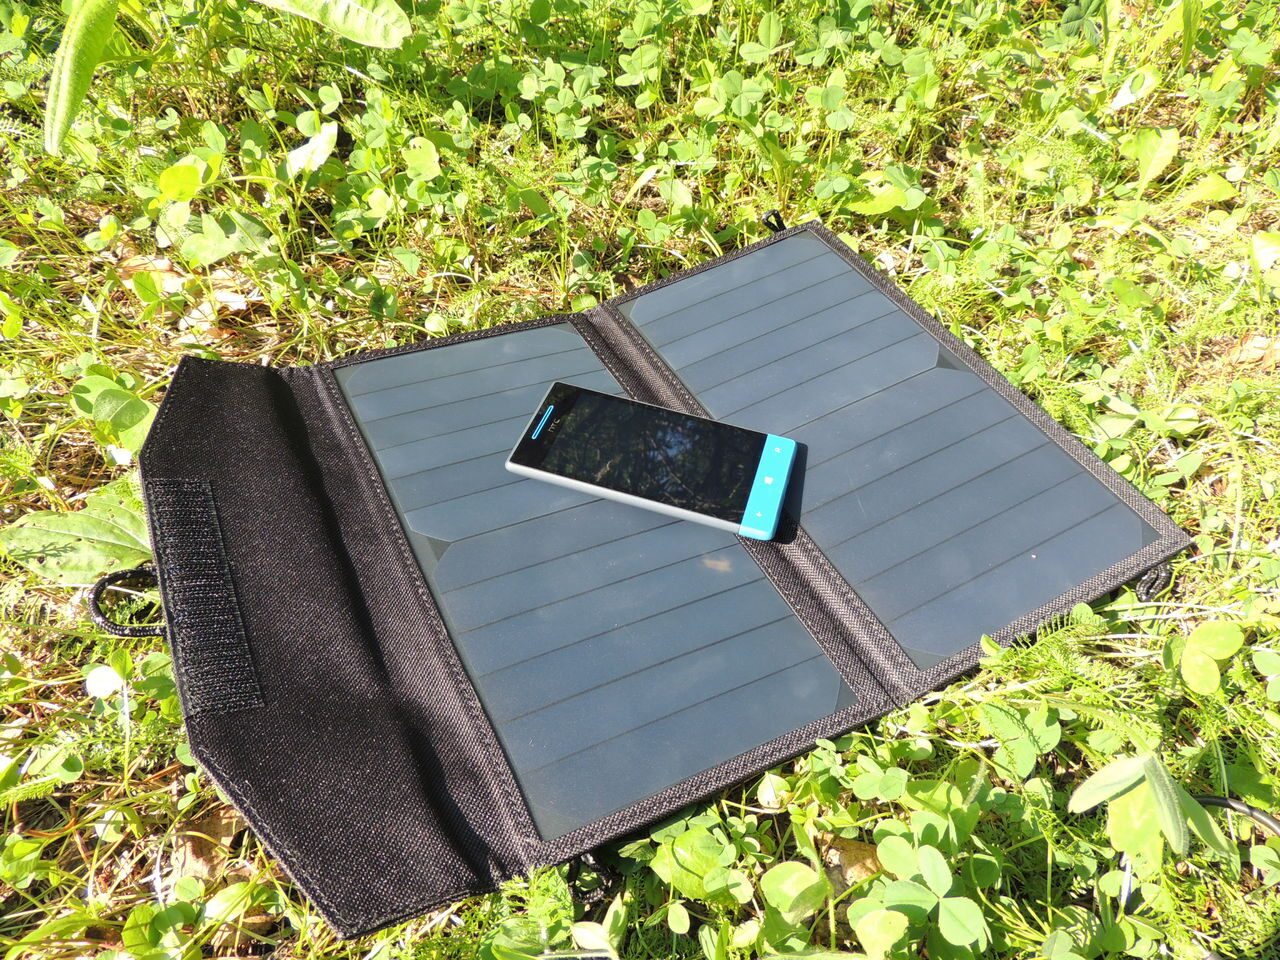  солнечная батарея 7Вт для телефона и планшета